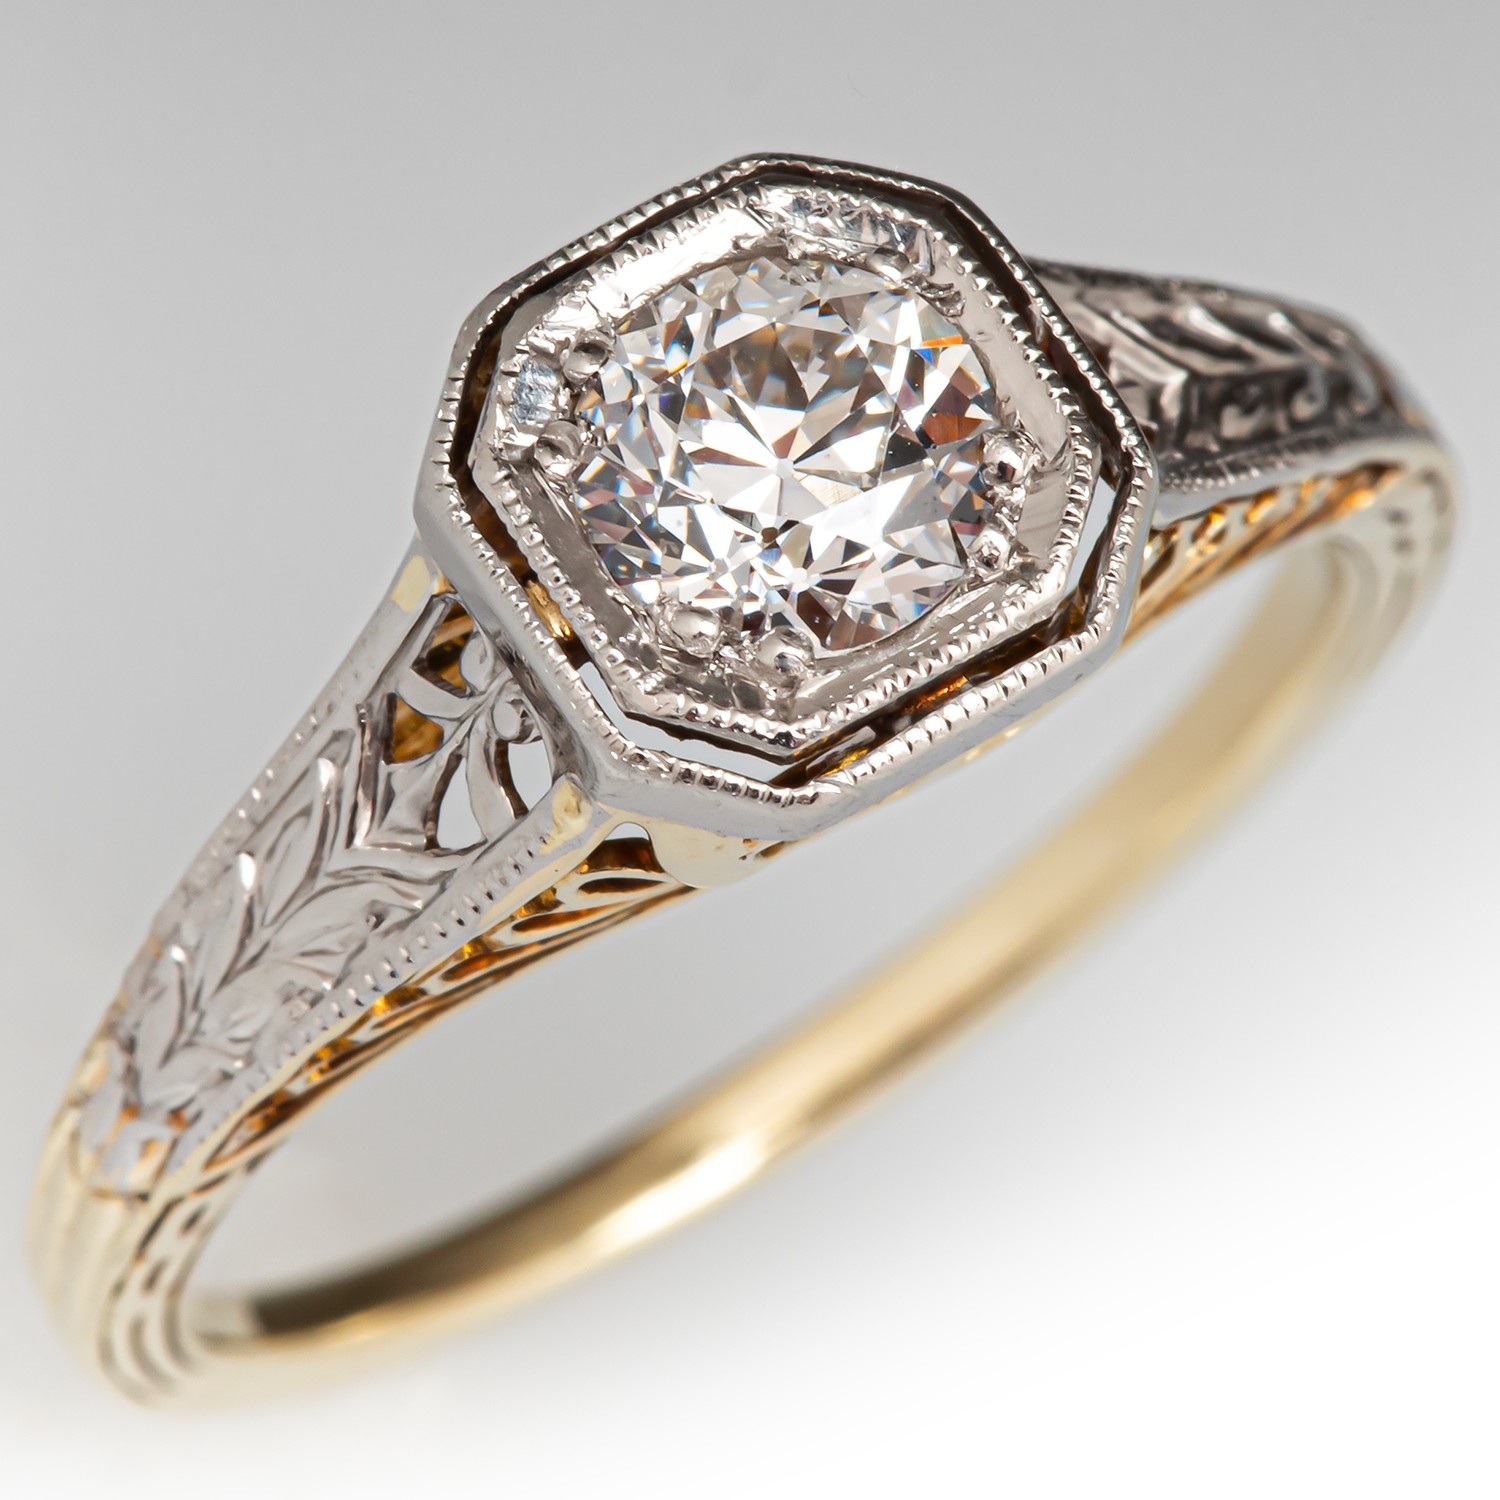 Circa 1920s Old Euro Diamond Ring 14K Yellow Gold/Platinum .52Ct F/SI1 GIA